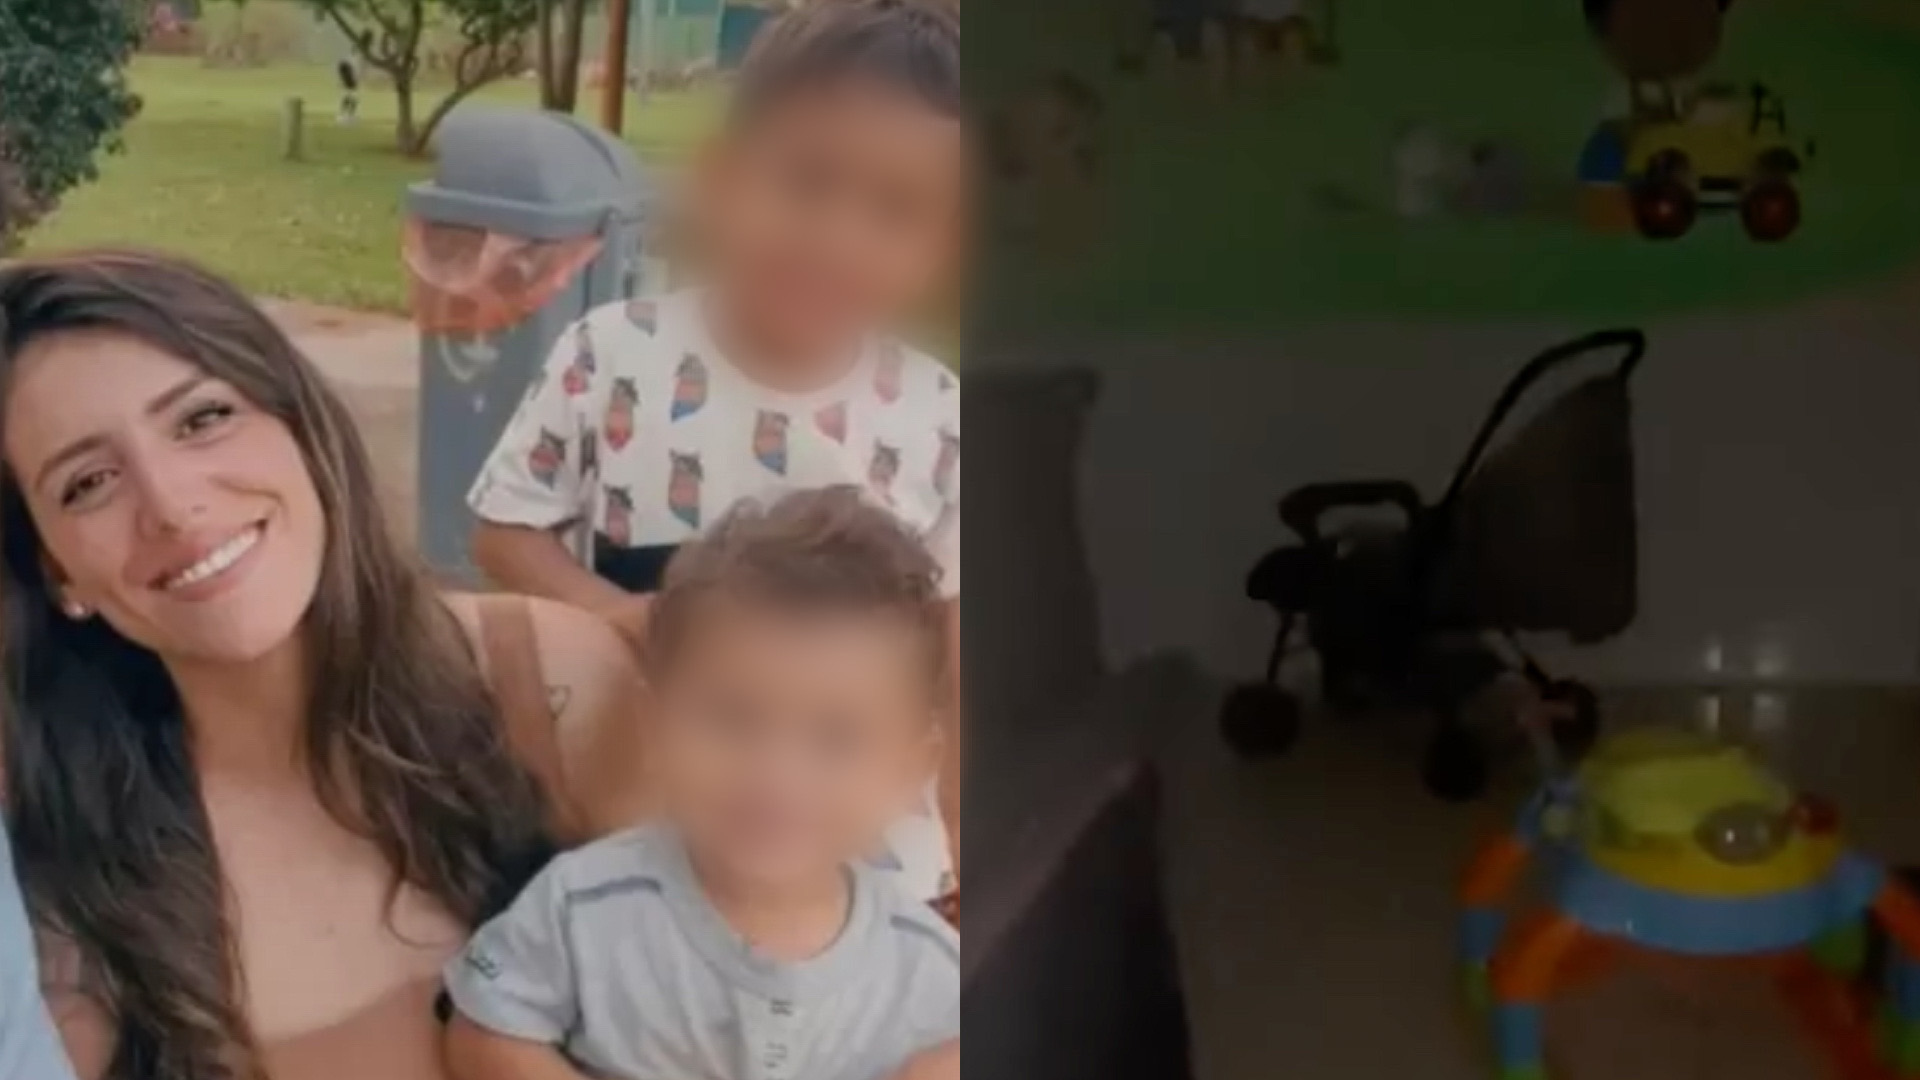 Vídeo: Mãe revela que filho de 1 ano foi abandonado em creche por funcionários: “Trancado, sozinho e gritando”